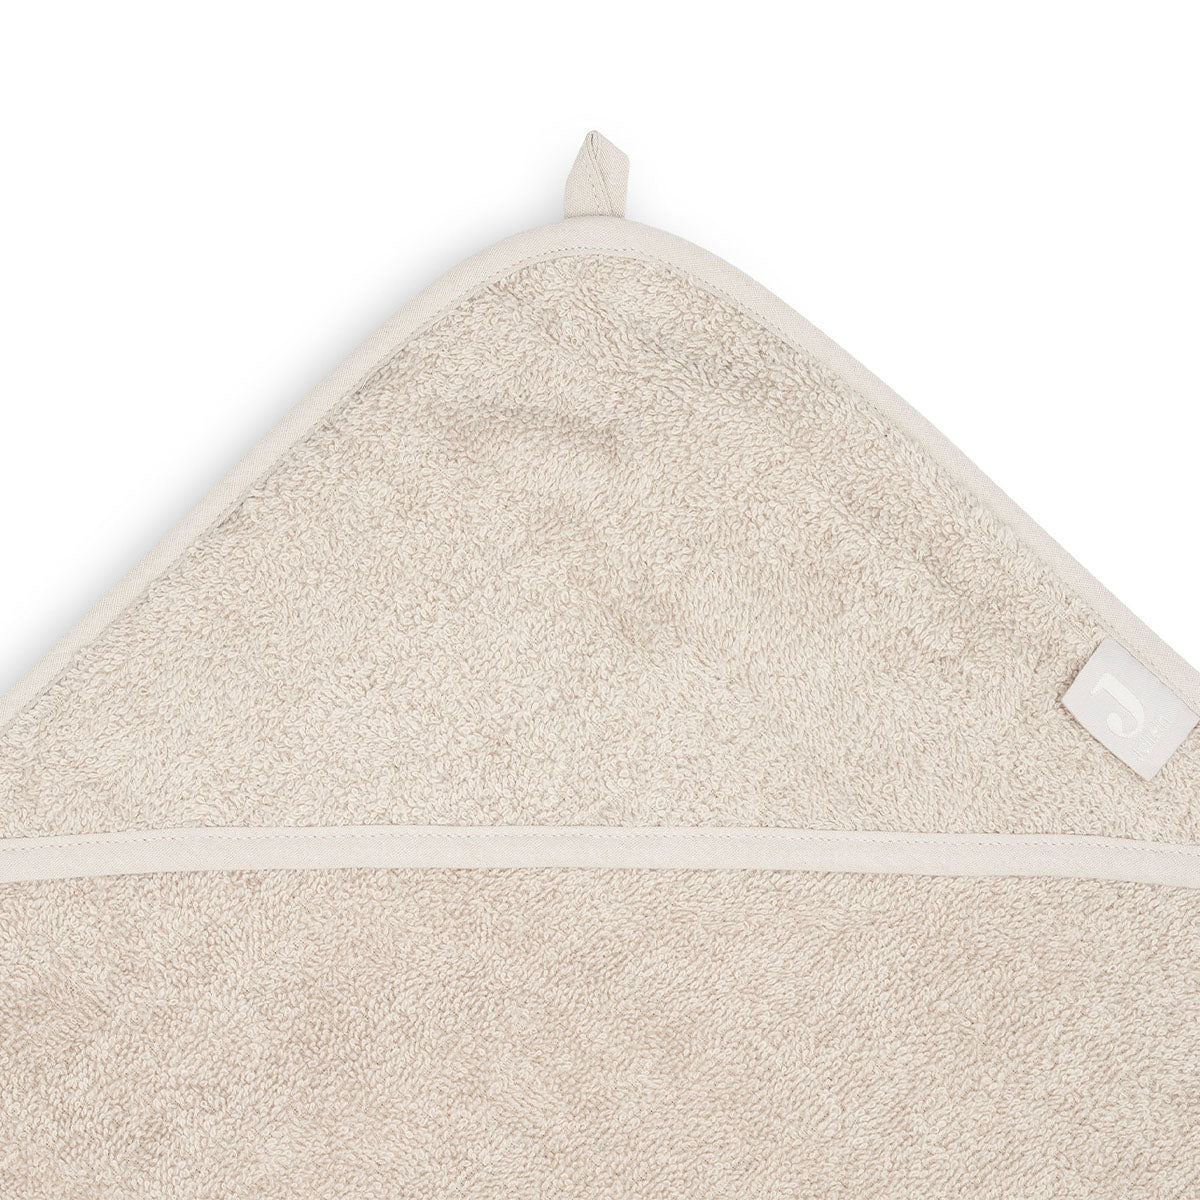 De heerlijk zachte badcape van Jollein in de kleur nougat is ideaal na het badderen of zwemmen. Houd je kindje warm en comfortabel met deze handige badcape. Eenvoudig op te hangen. Afmeting 100x100 cm. VanZus